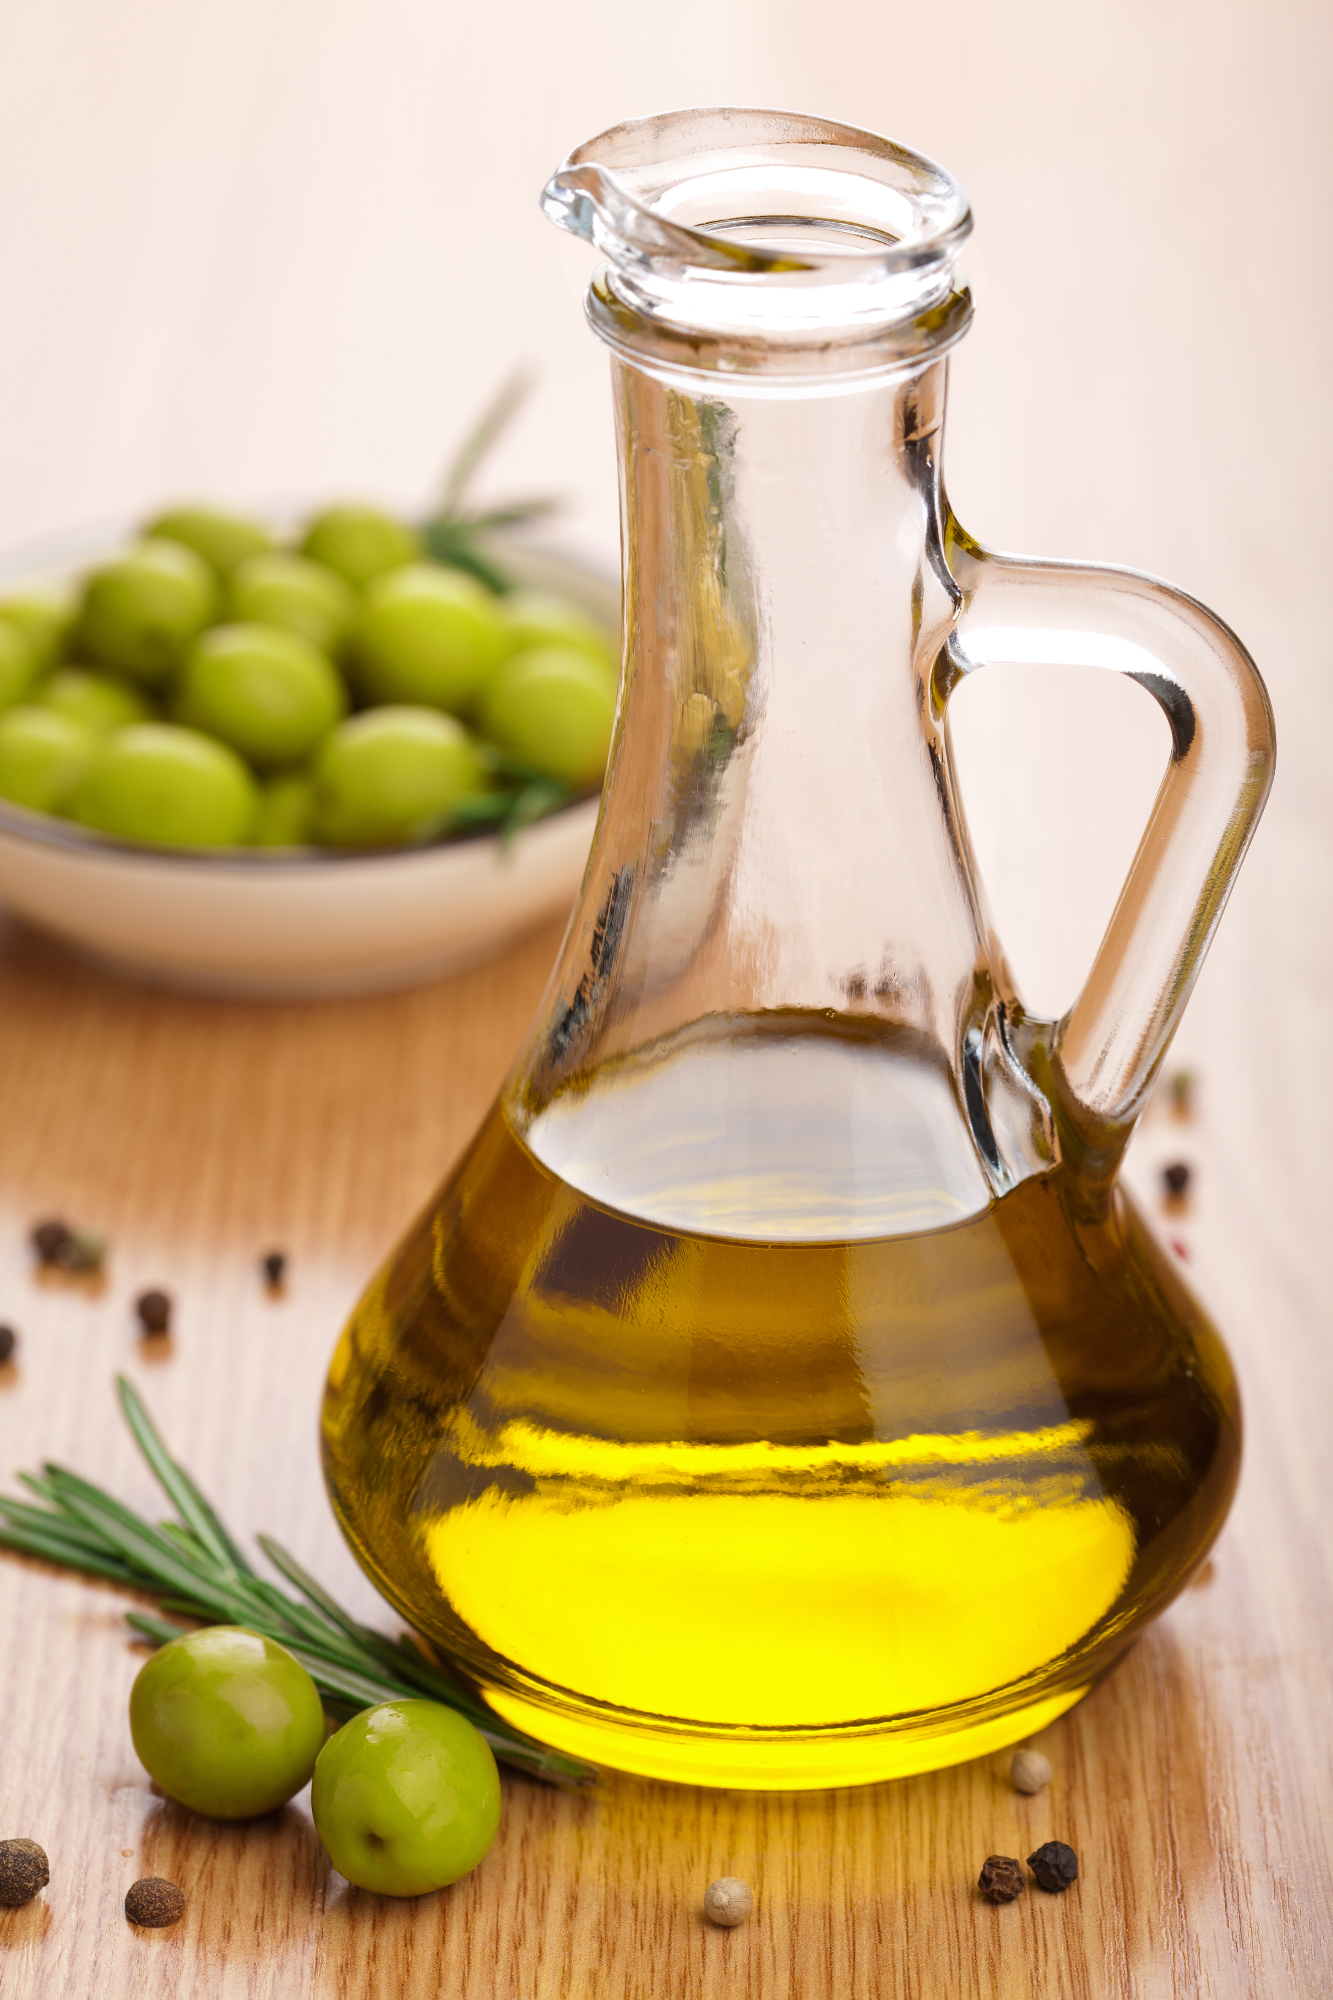 Olivno olje je dosti bolj zdravo od katerega koli drugega olja